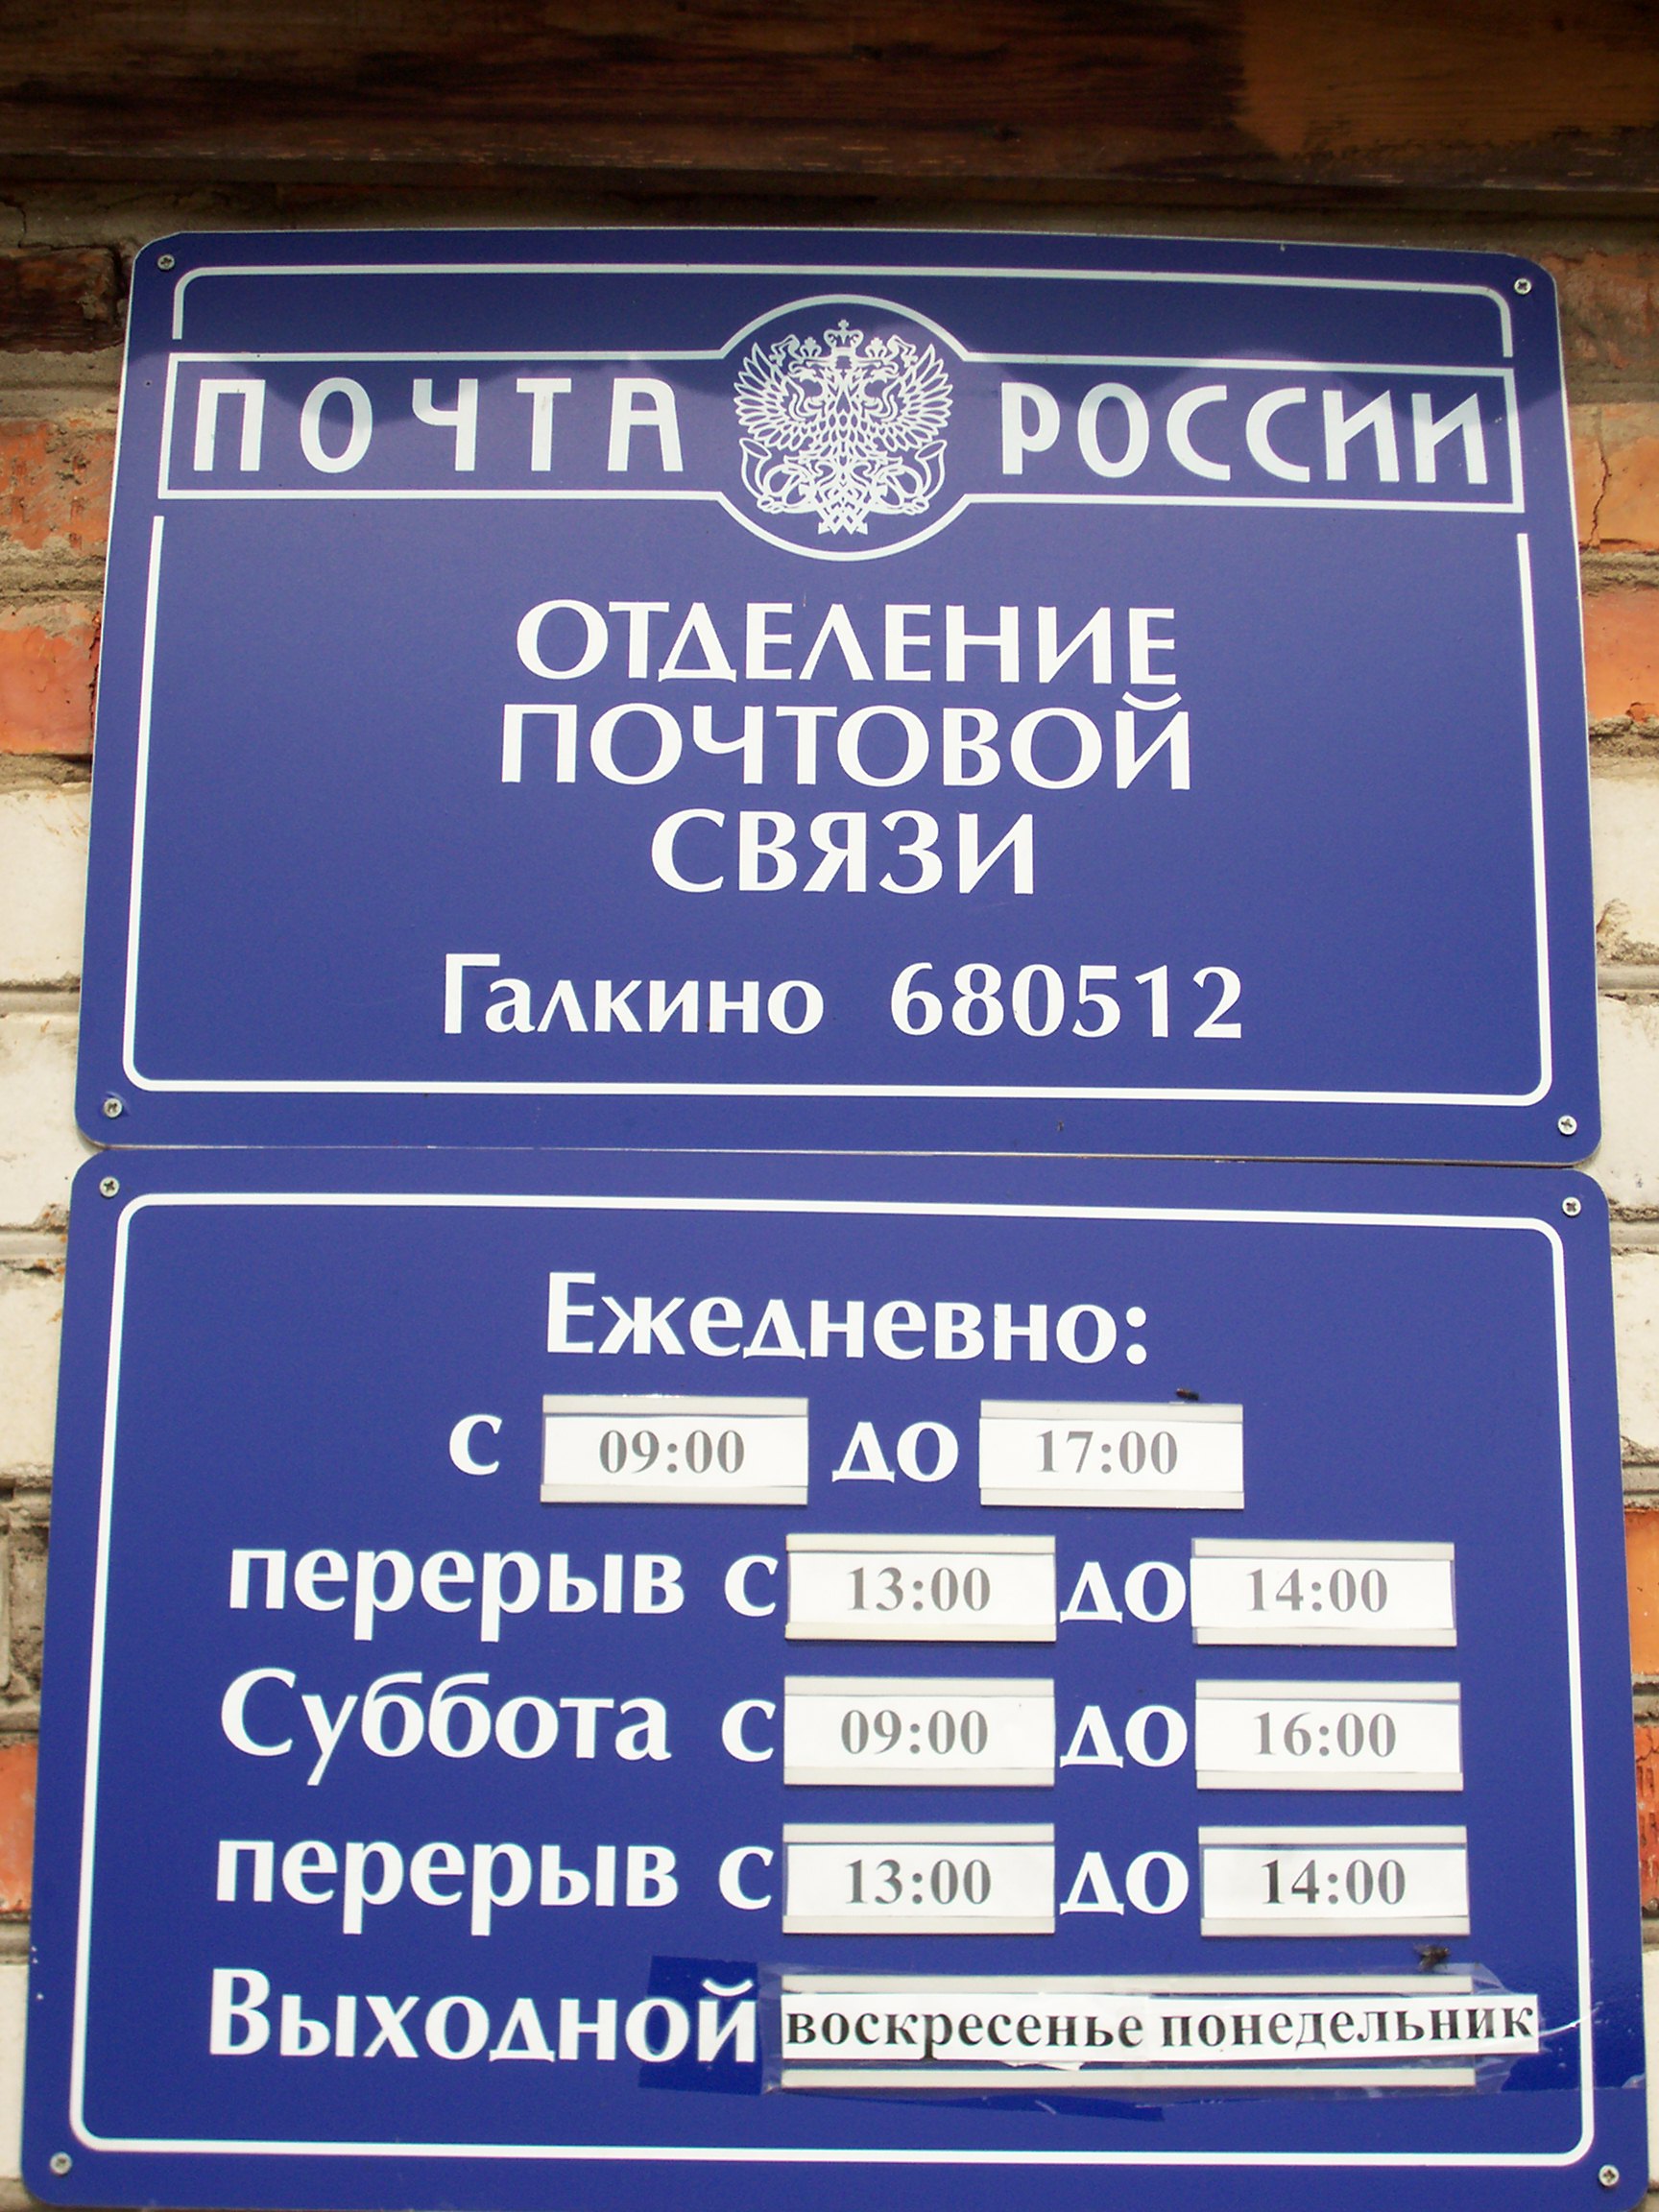 ВХОД, отделение почтовой связи 680512, Хабаровский край, Хабаровский р-он, Галкино